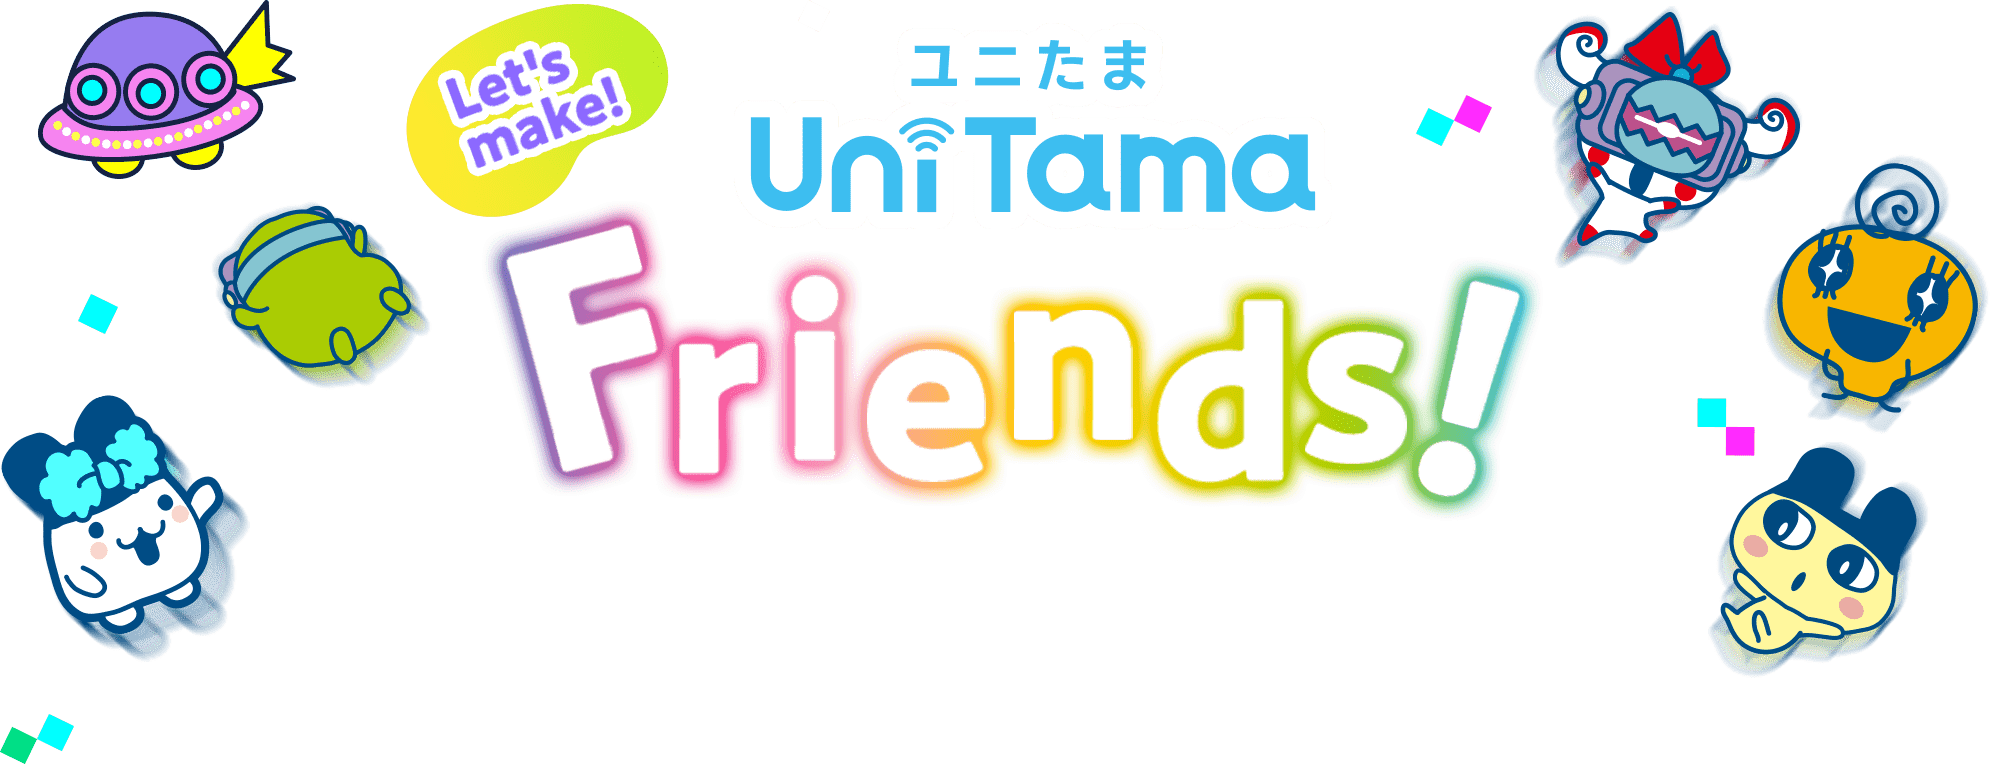 Let's make UniTamaFriends!